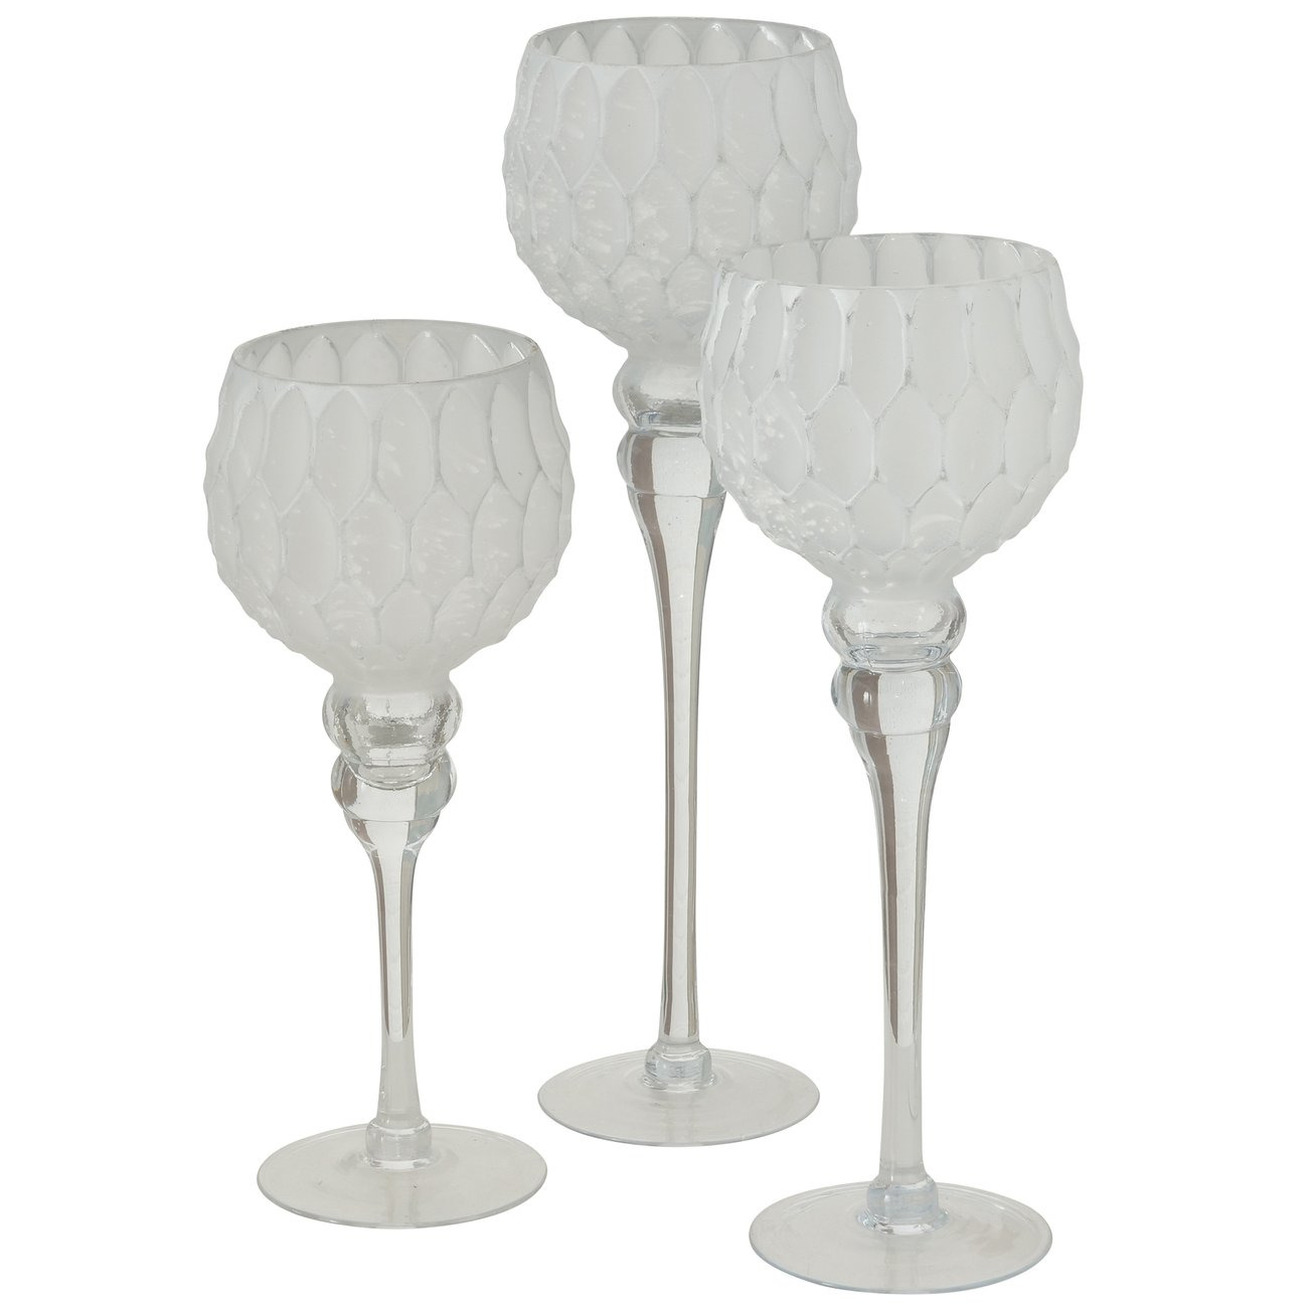 Luxe glazen design kaarsenhouders windlichten set van 3x stuks zilver wit 30 40 cm